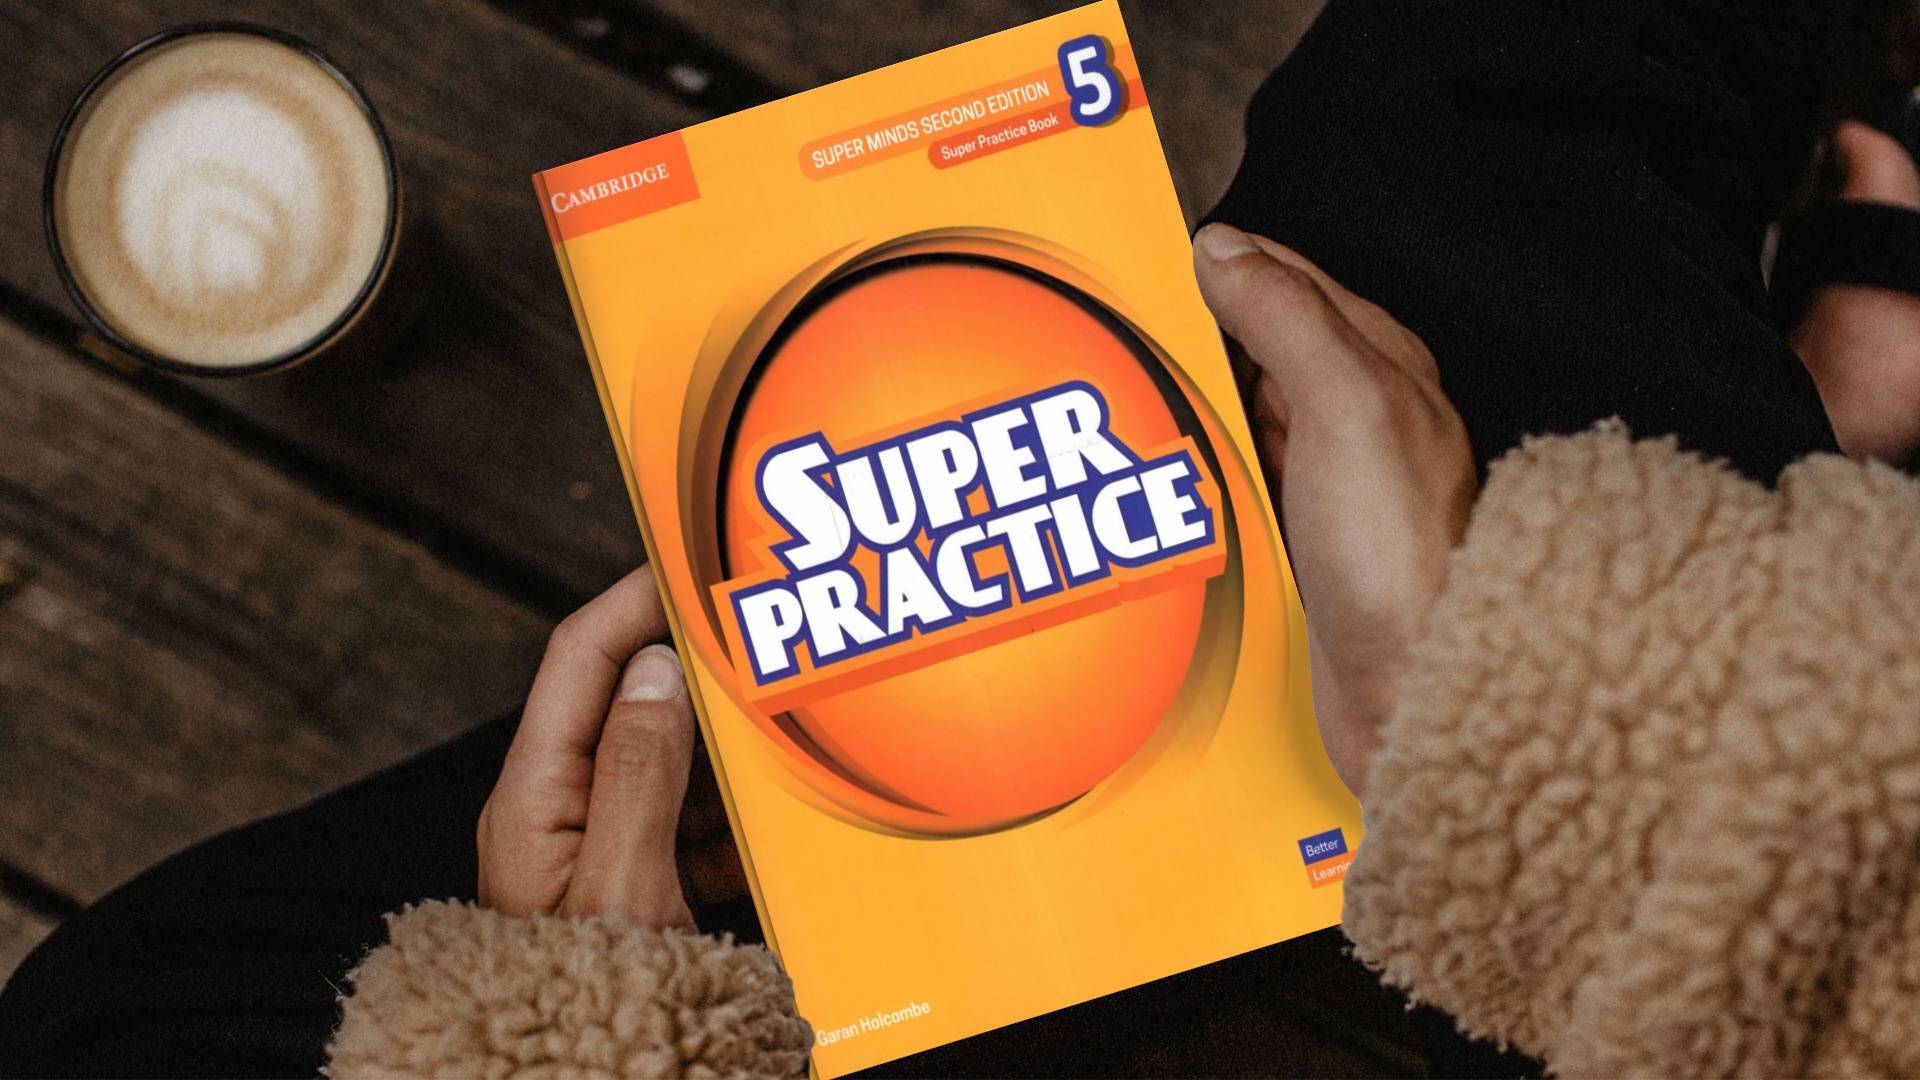 Super Minds 5 Second Edition Super Practice سوپر پرکتیس پنج ویرایش دوم